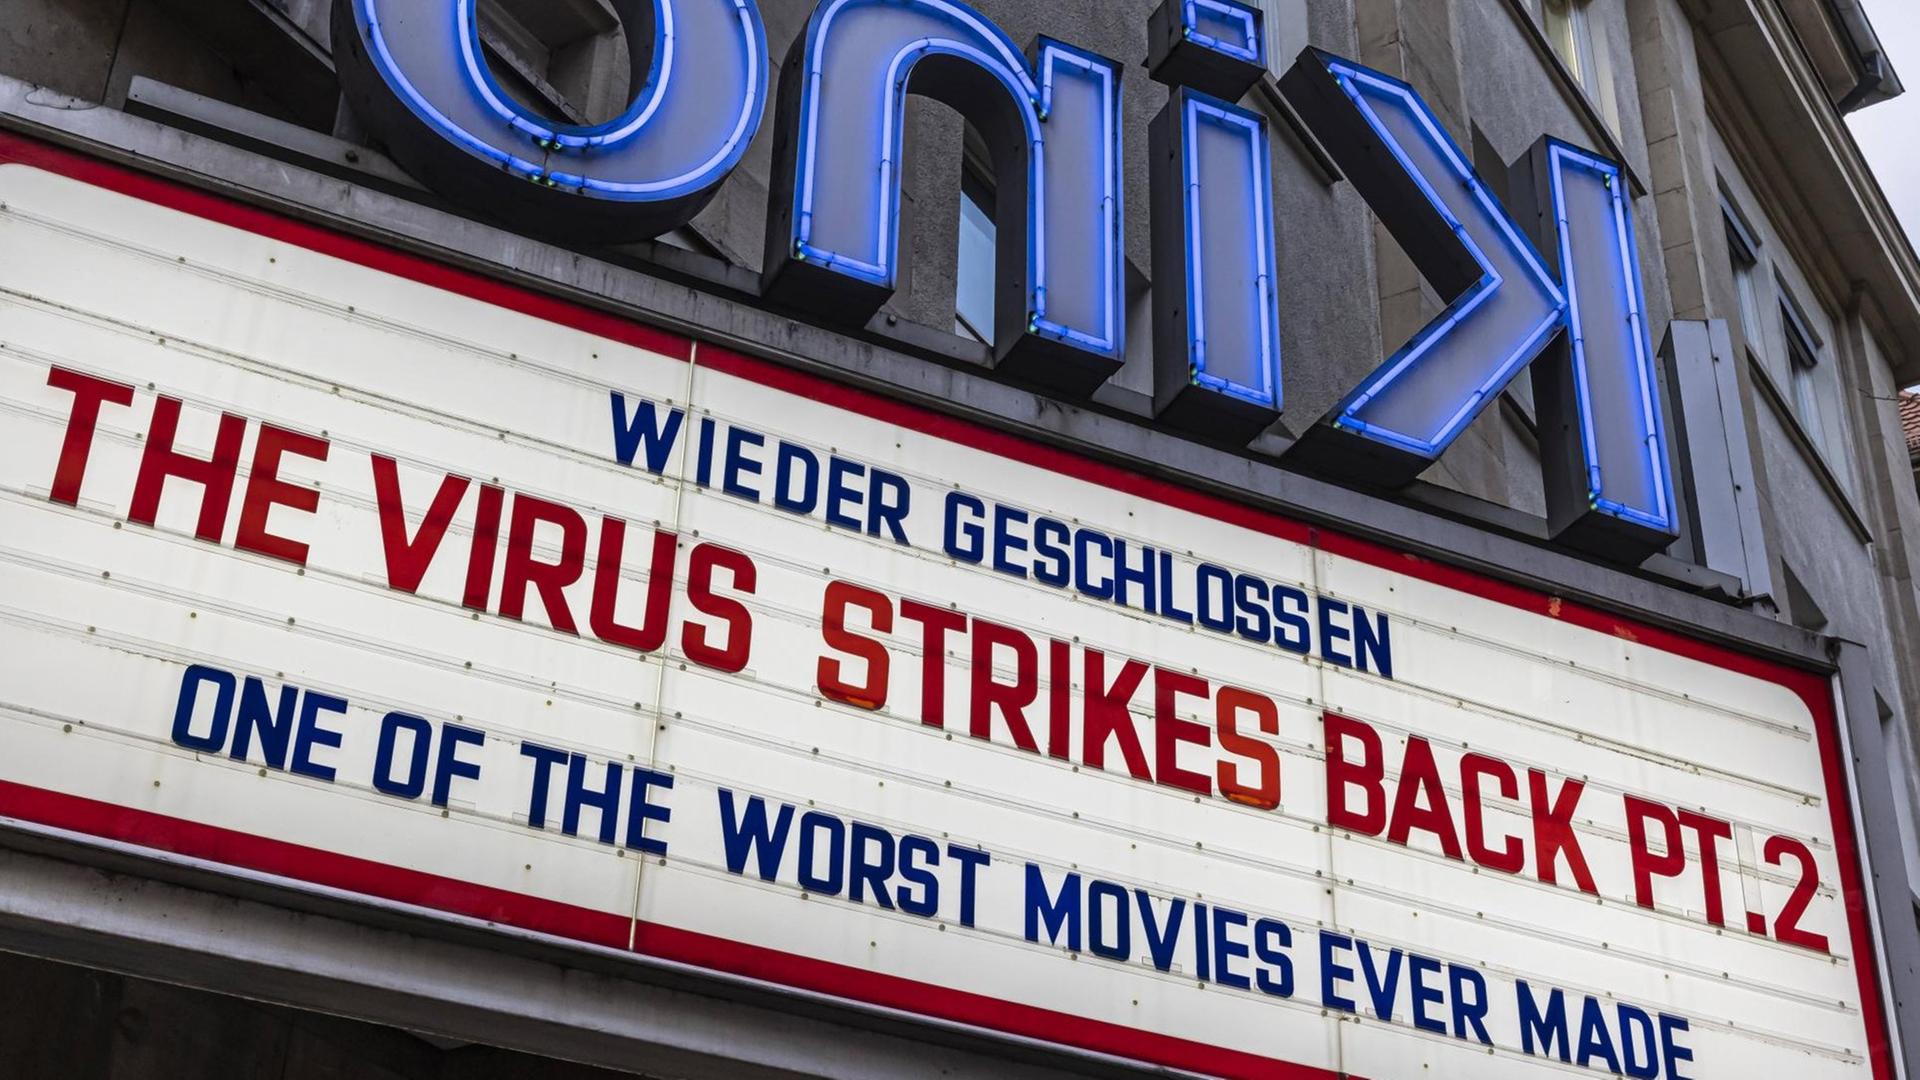 Das Delphi-Kino in Stuttgart hat wegen der erneuten pandemiebedingten Schließung eine sarkastische Filmankündigung platziert: The Virus Strikes Back, Part Two. One of the worst movies ever made